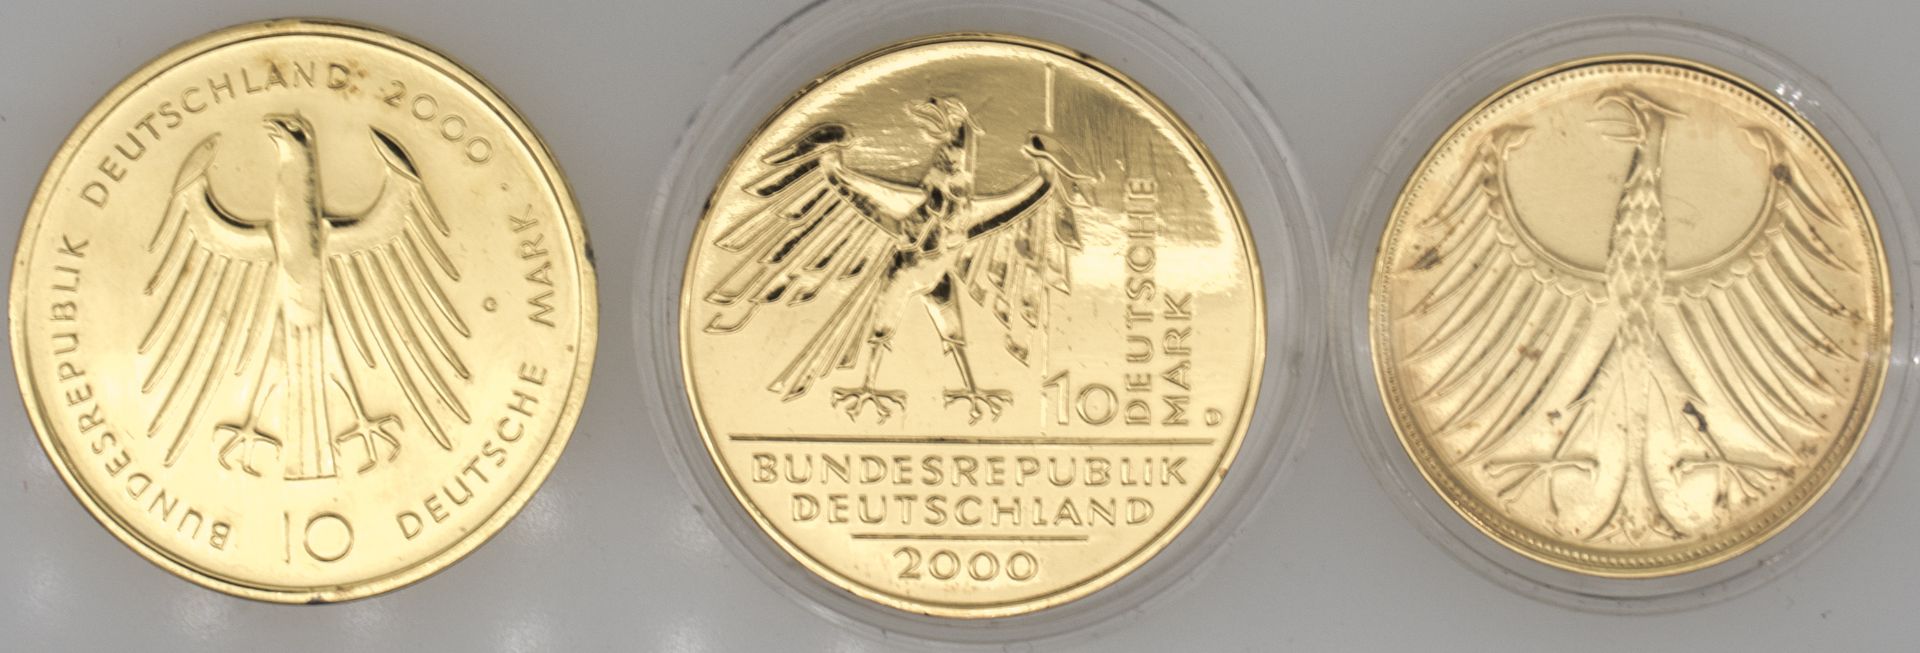 BRD 1974 / 2000, Lot Silbermünzen, vergoldet, dabei 10 DM "10 Jahre deutsche Einheit", 10 DM "1200 - Image 2 of 2